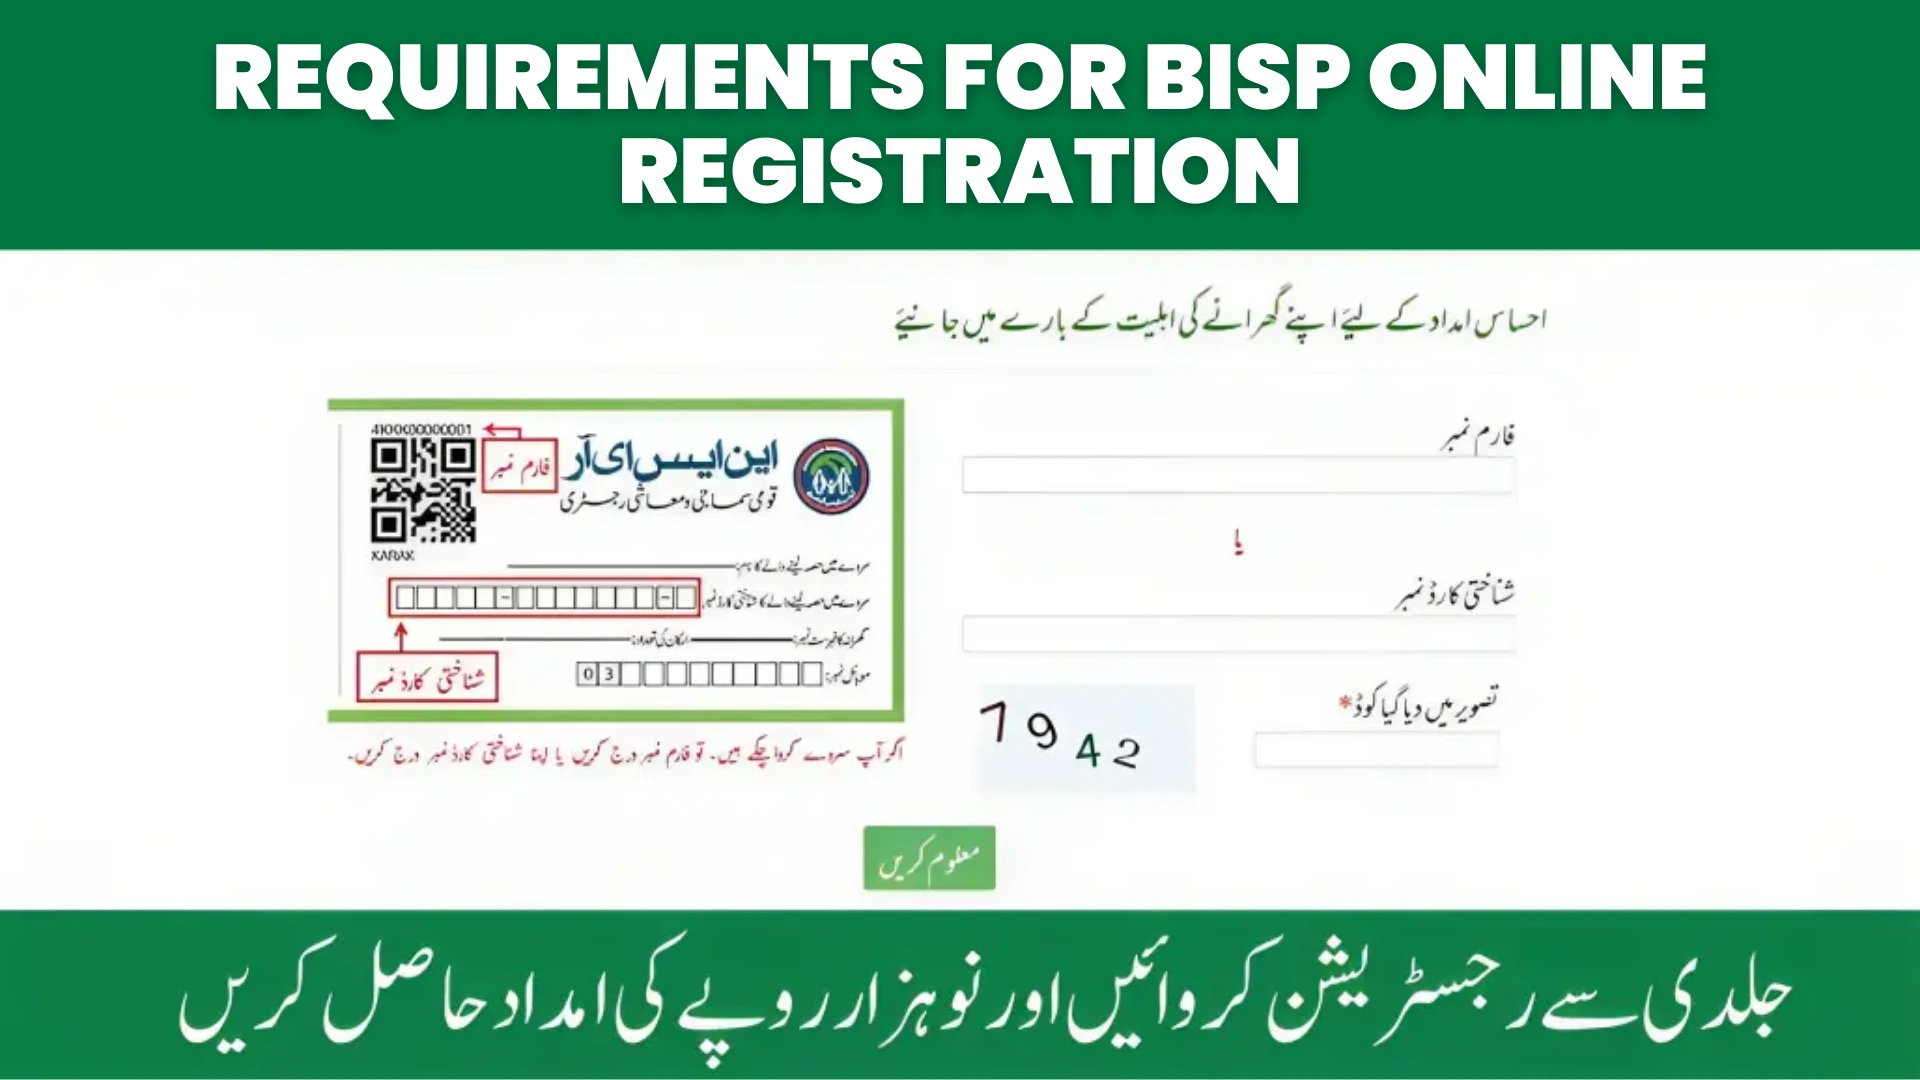 Requirements for BISP Online Registration